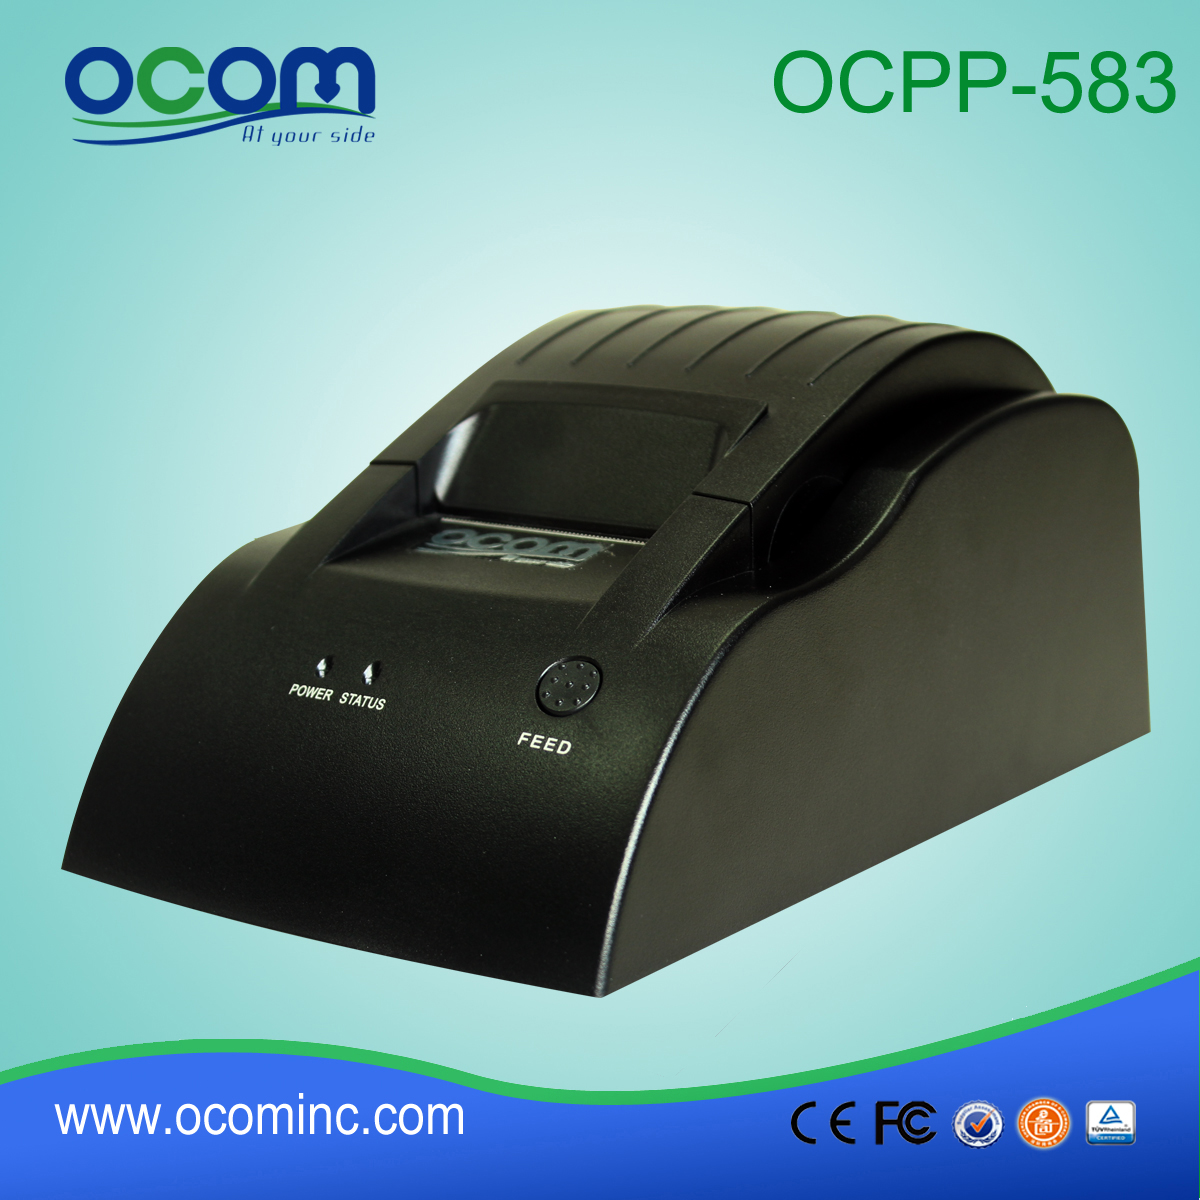 OCPP-583: 2015 de alta qualidade barato módulo impressora térmica